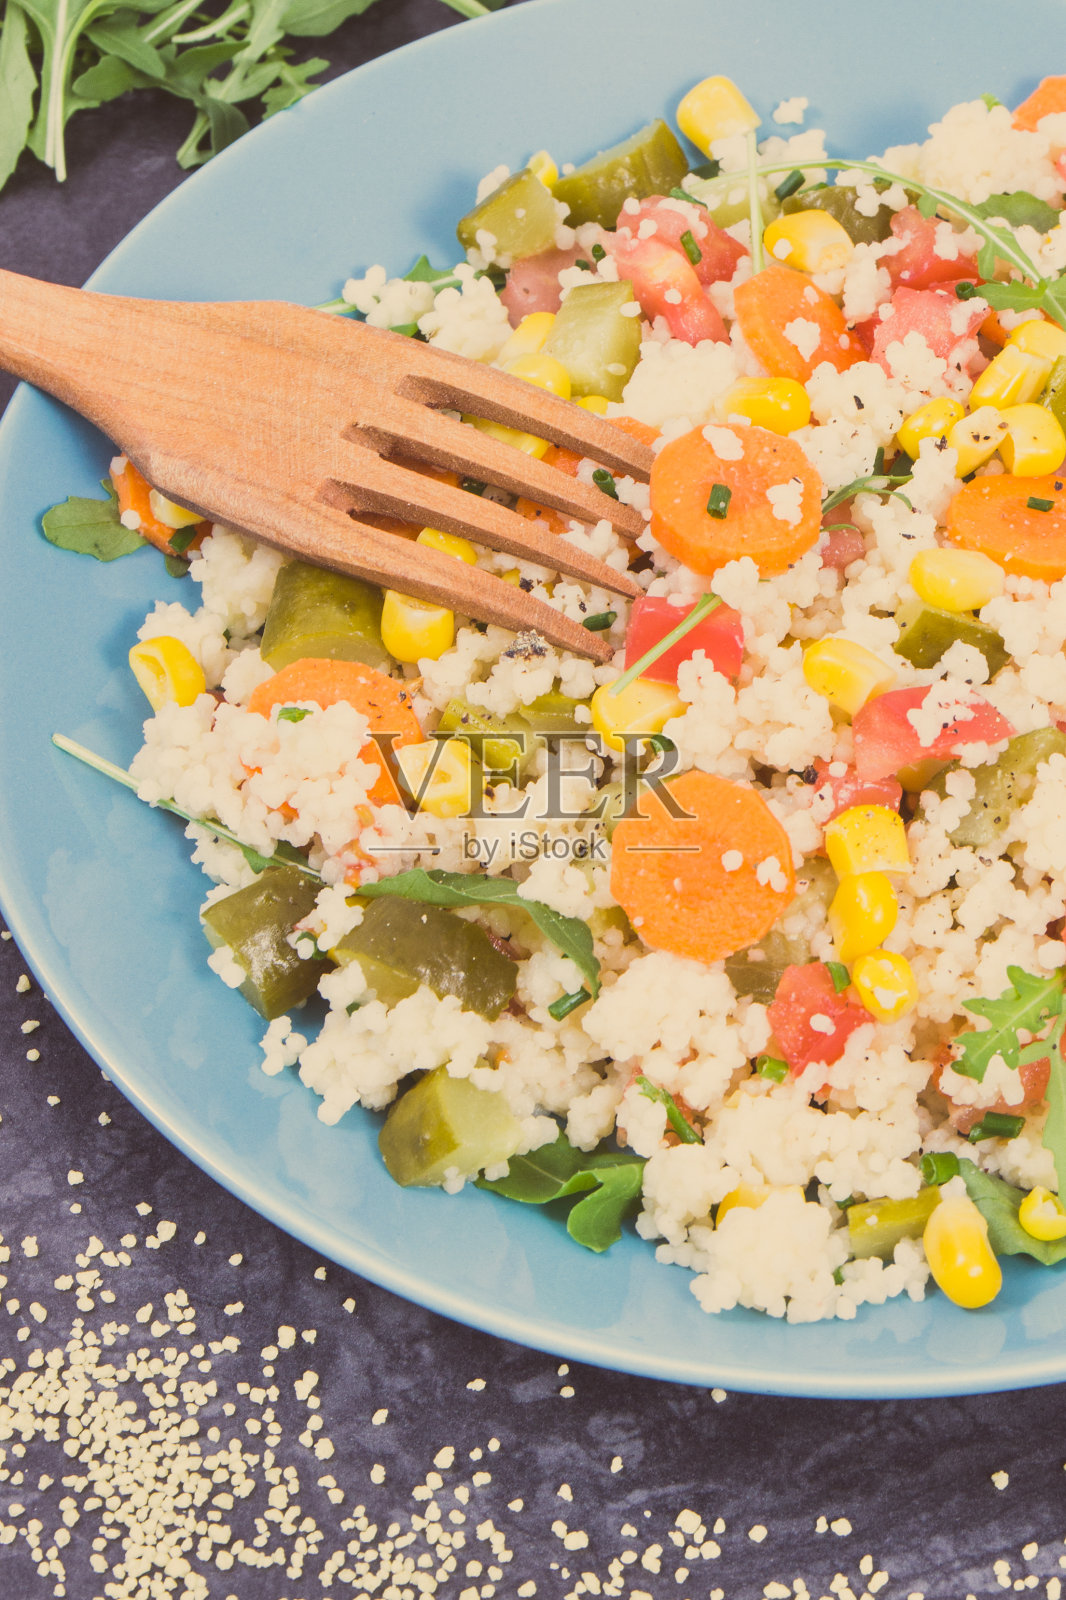 沙拉配蔬菜和粗麦粉。含有维生素和矿物质的清淡健康饮食照片摄影图片